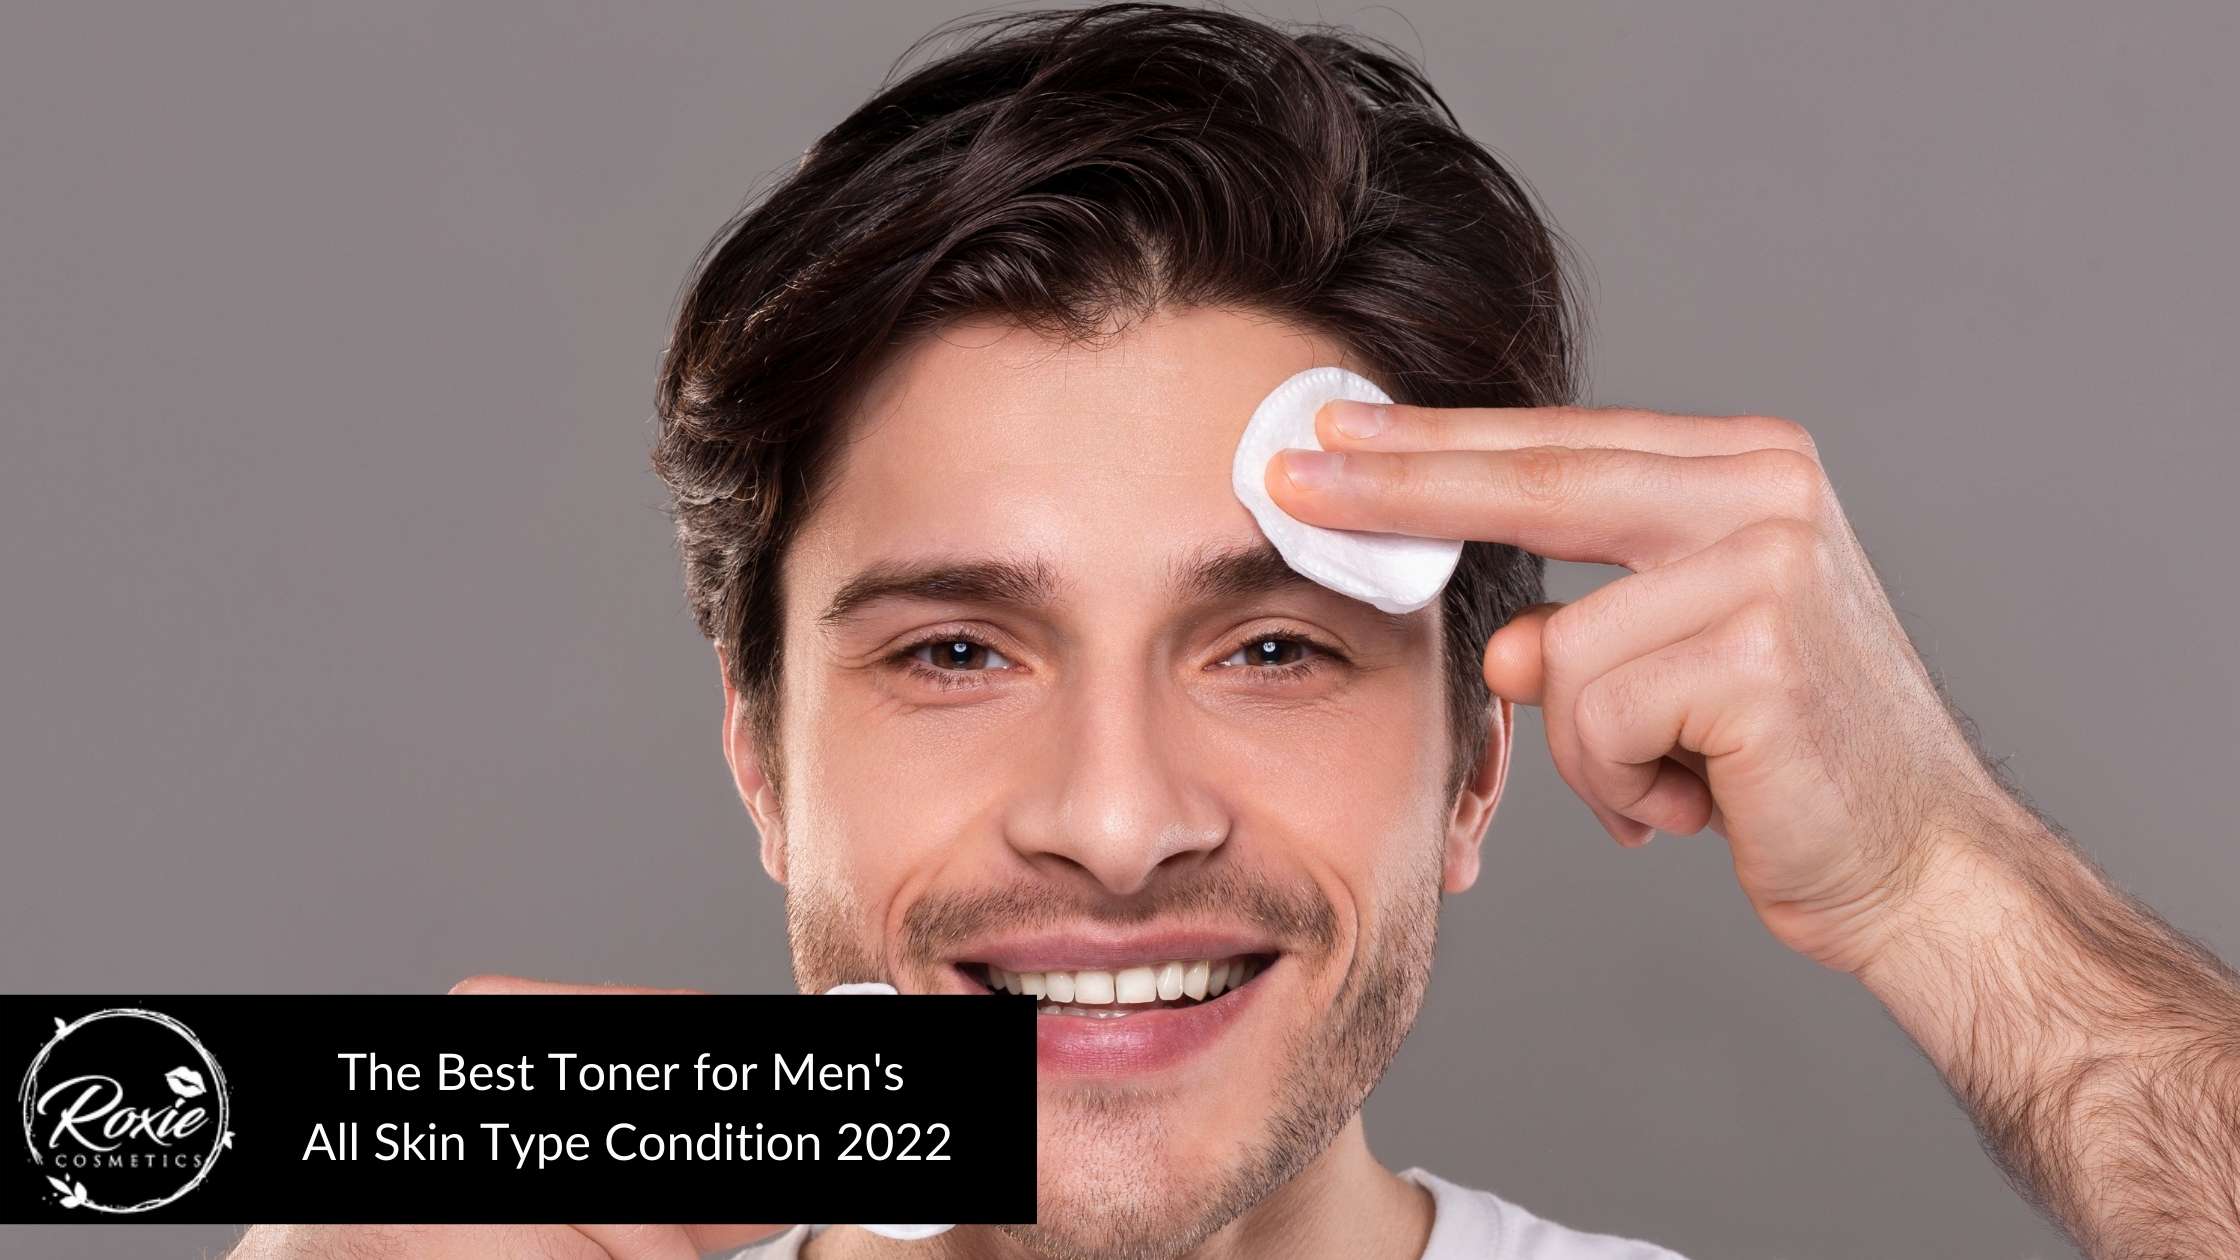 Viking Revolution Skin Toner for Men, Facial Toner Spray for Mens Face Care, Toner for Face - Hydrating Toner for Oily Skin, Balancing Toner for